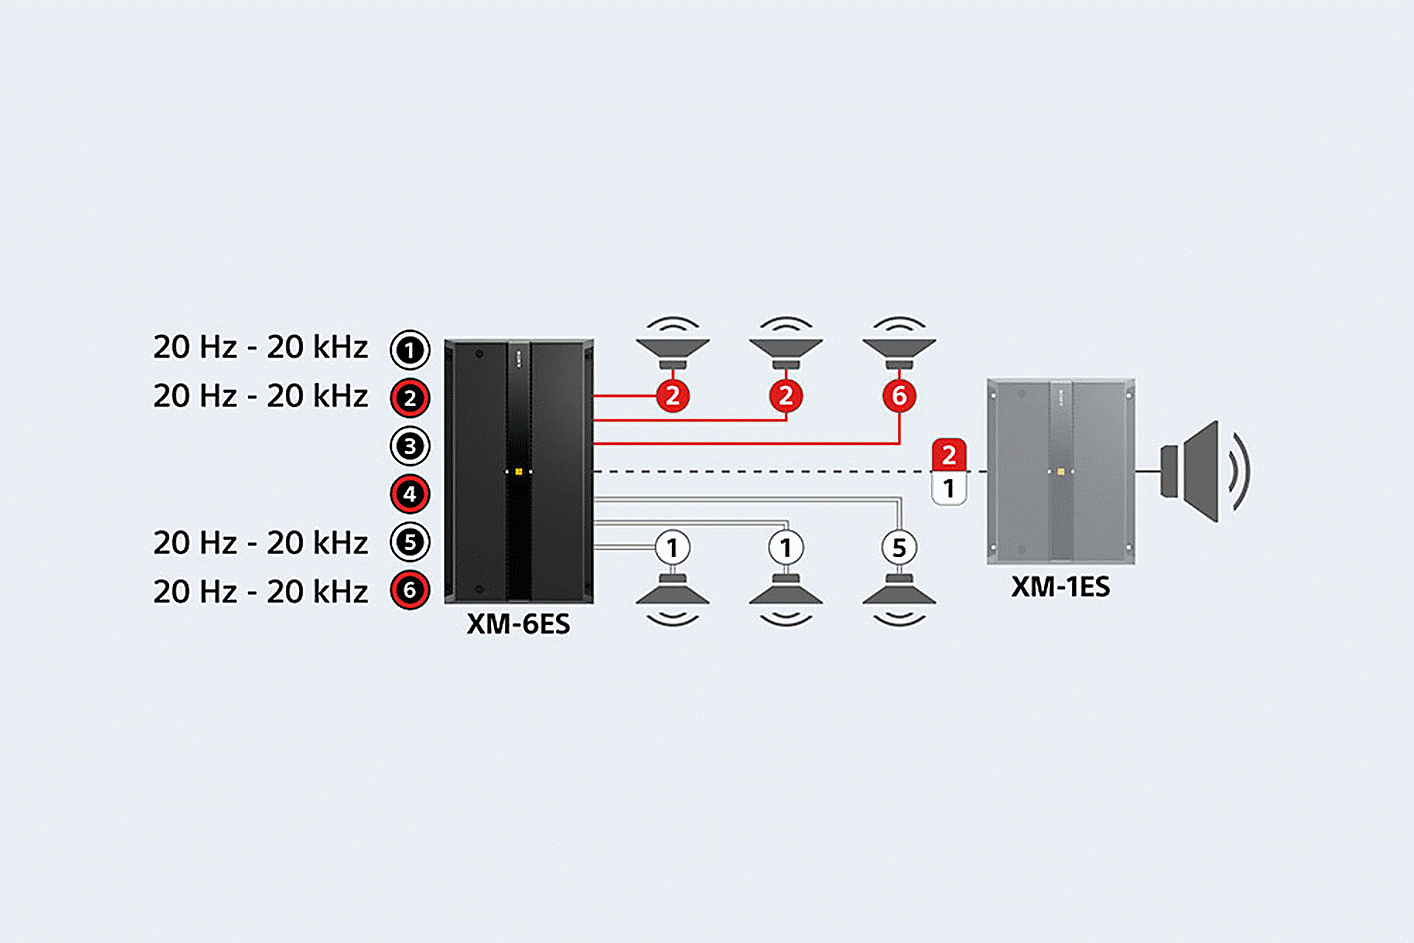 Prie šešių garsiakalbių ir XM-1ES prijungto XM-6ES schema, garso nustatymai rodomi prie 1, 2, 5 ir 6 prievadų.